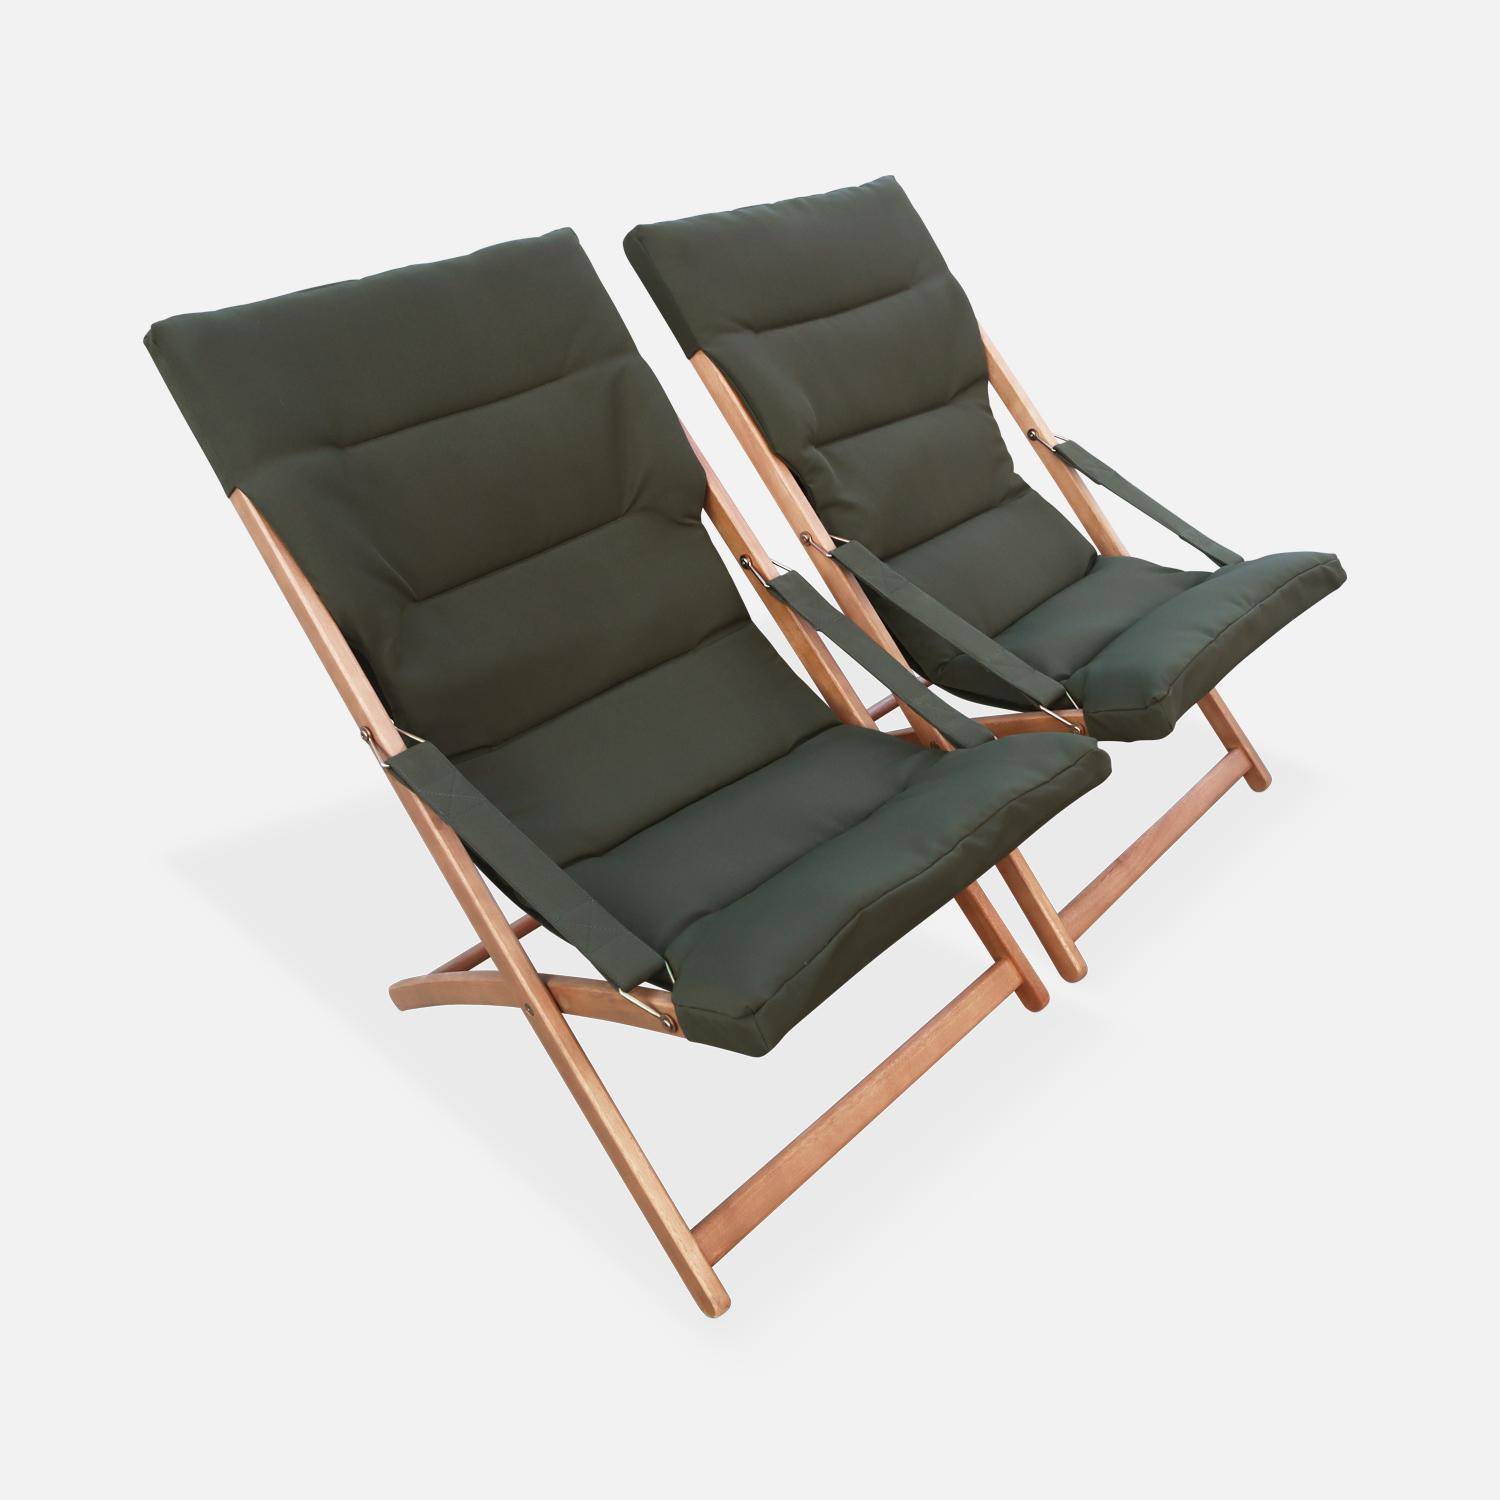 2er Set khaki Liegestühle aus Eukalyptusholz, zusammenklappbar, gepolsterte Sitzfläche - Vigo,sweeek,Photo3